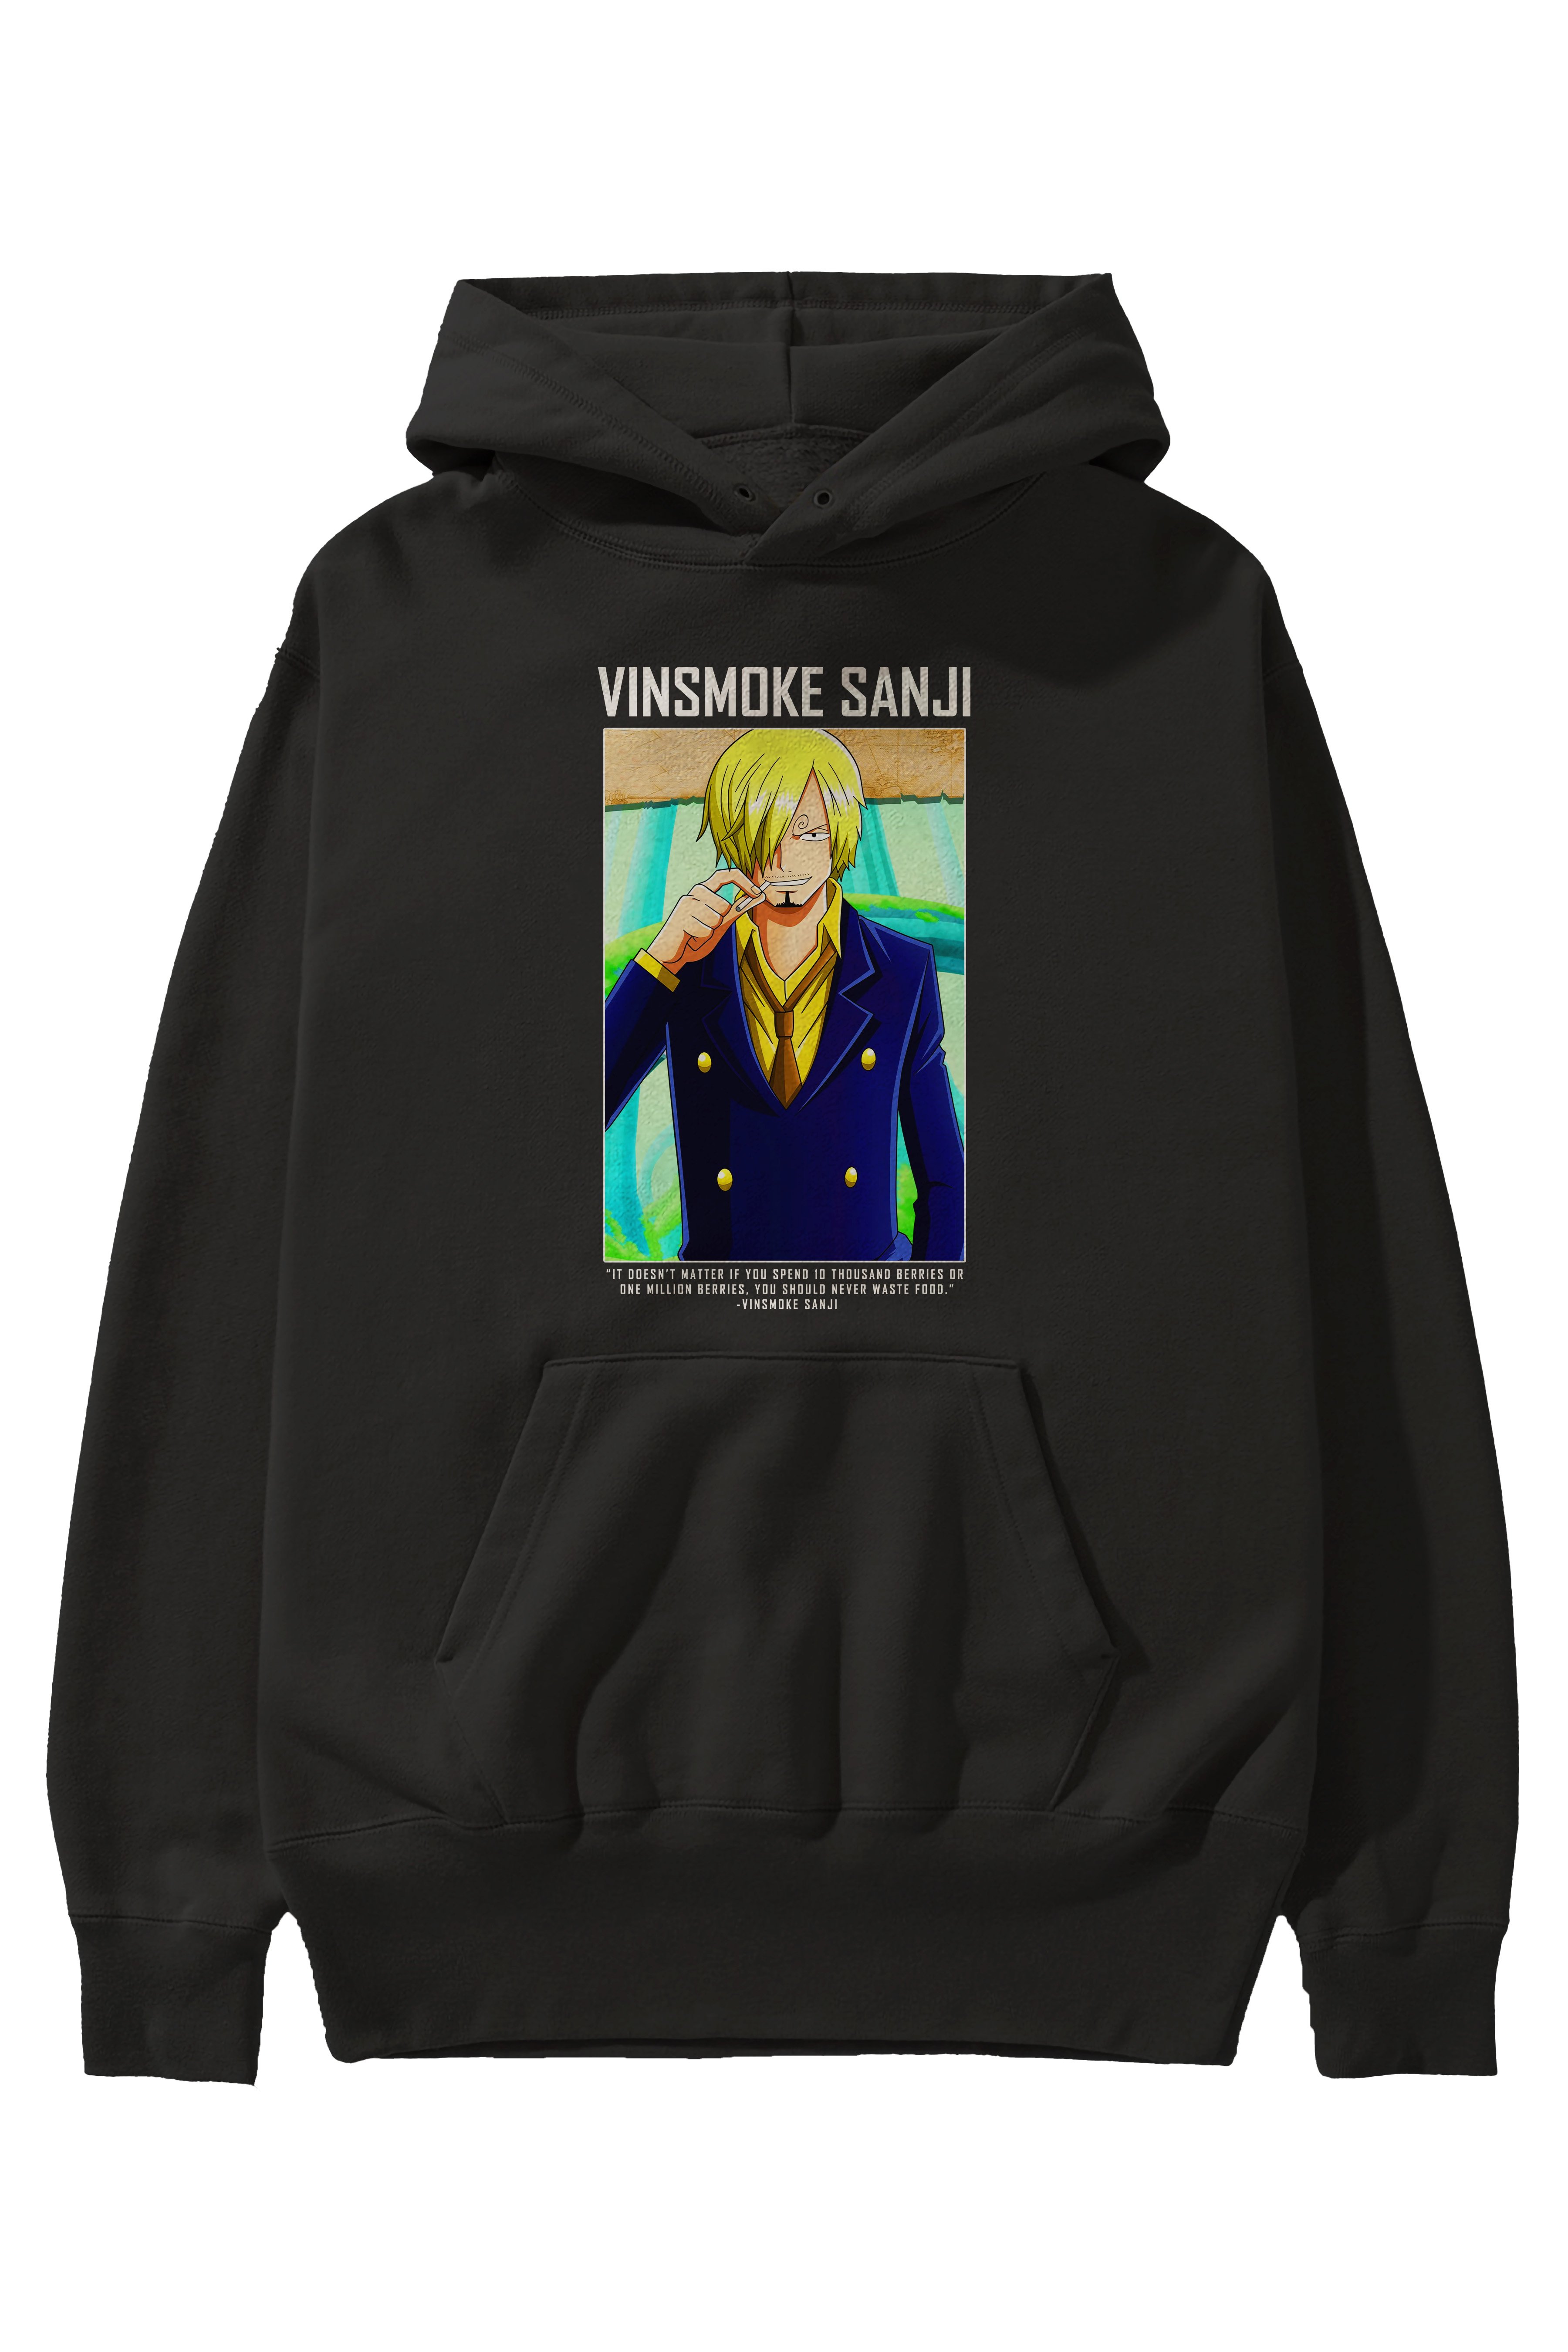 Sanji 2 Anime Ön Baskılı Hoodie Oversize Kapüşonlu Sweatshirt Erkek Kadın Unisex